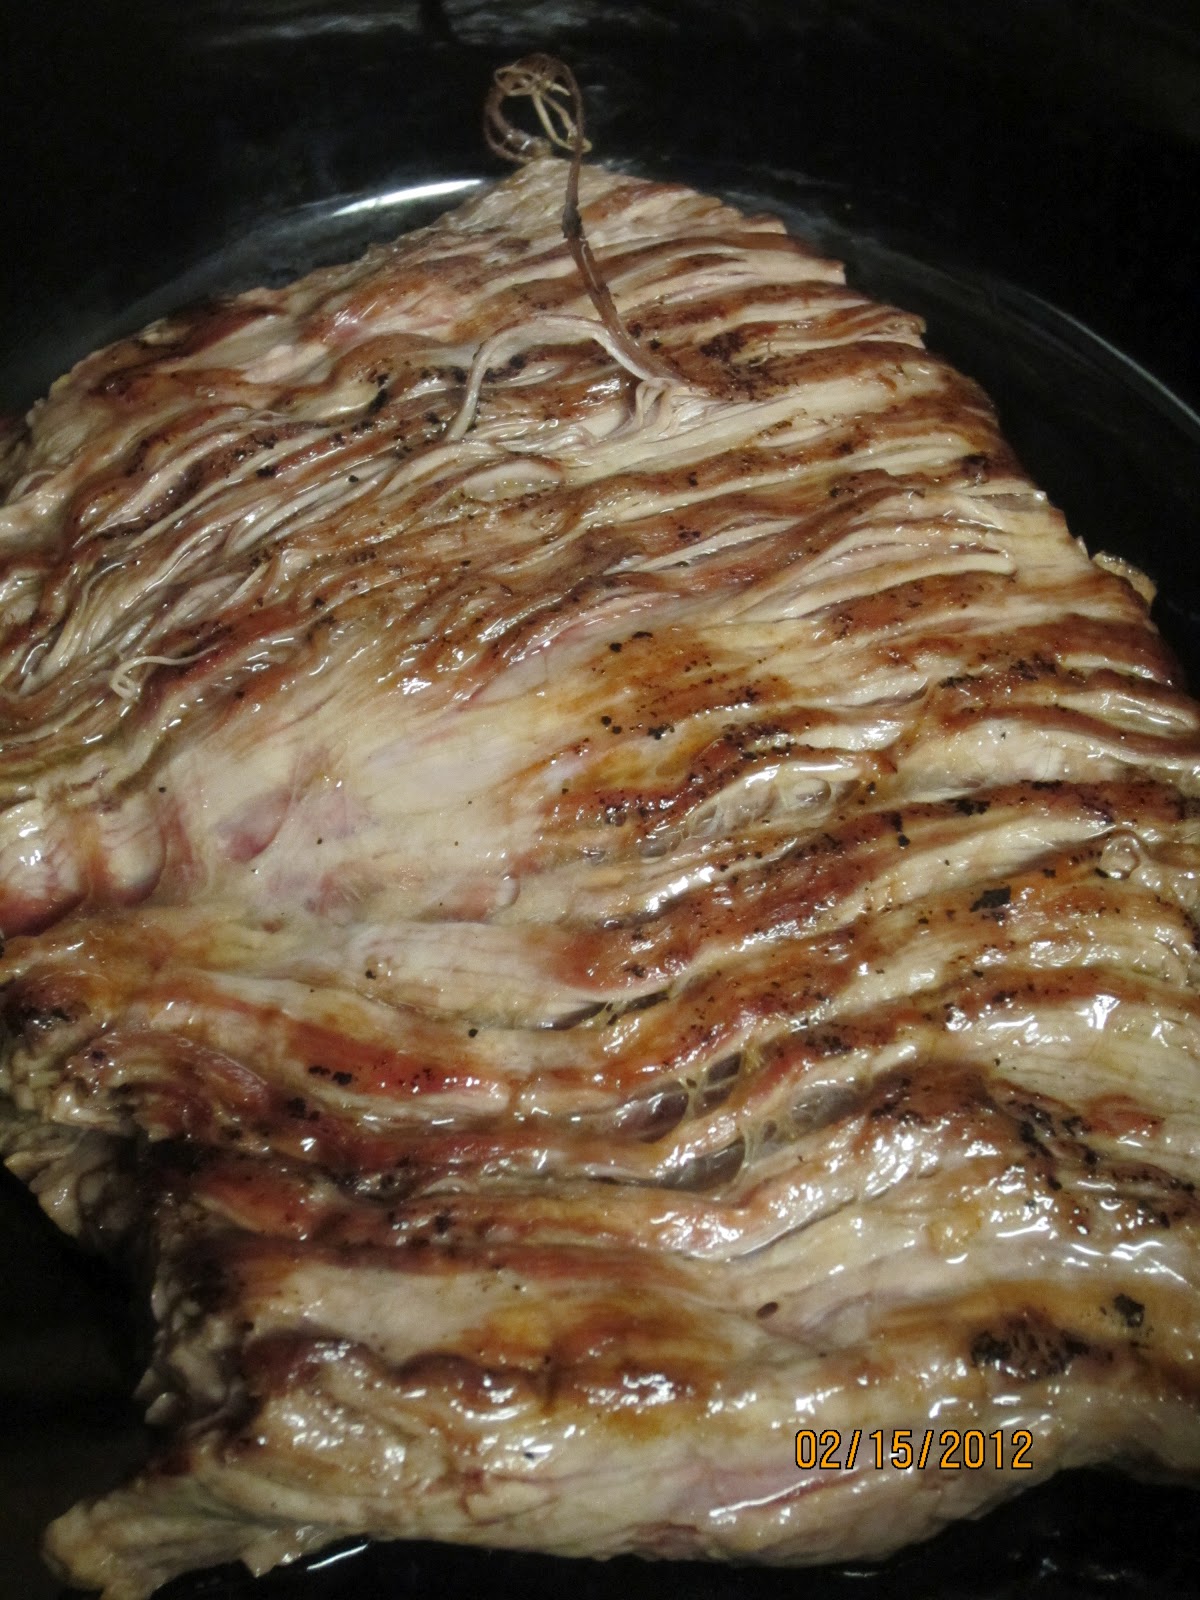 http://easypeas-y.blogspot.com/2012/02/slow-cooker-flank-steak.html